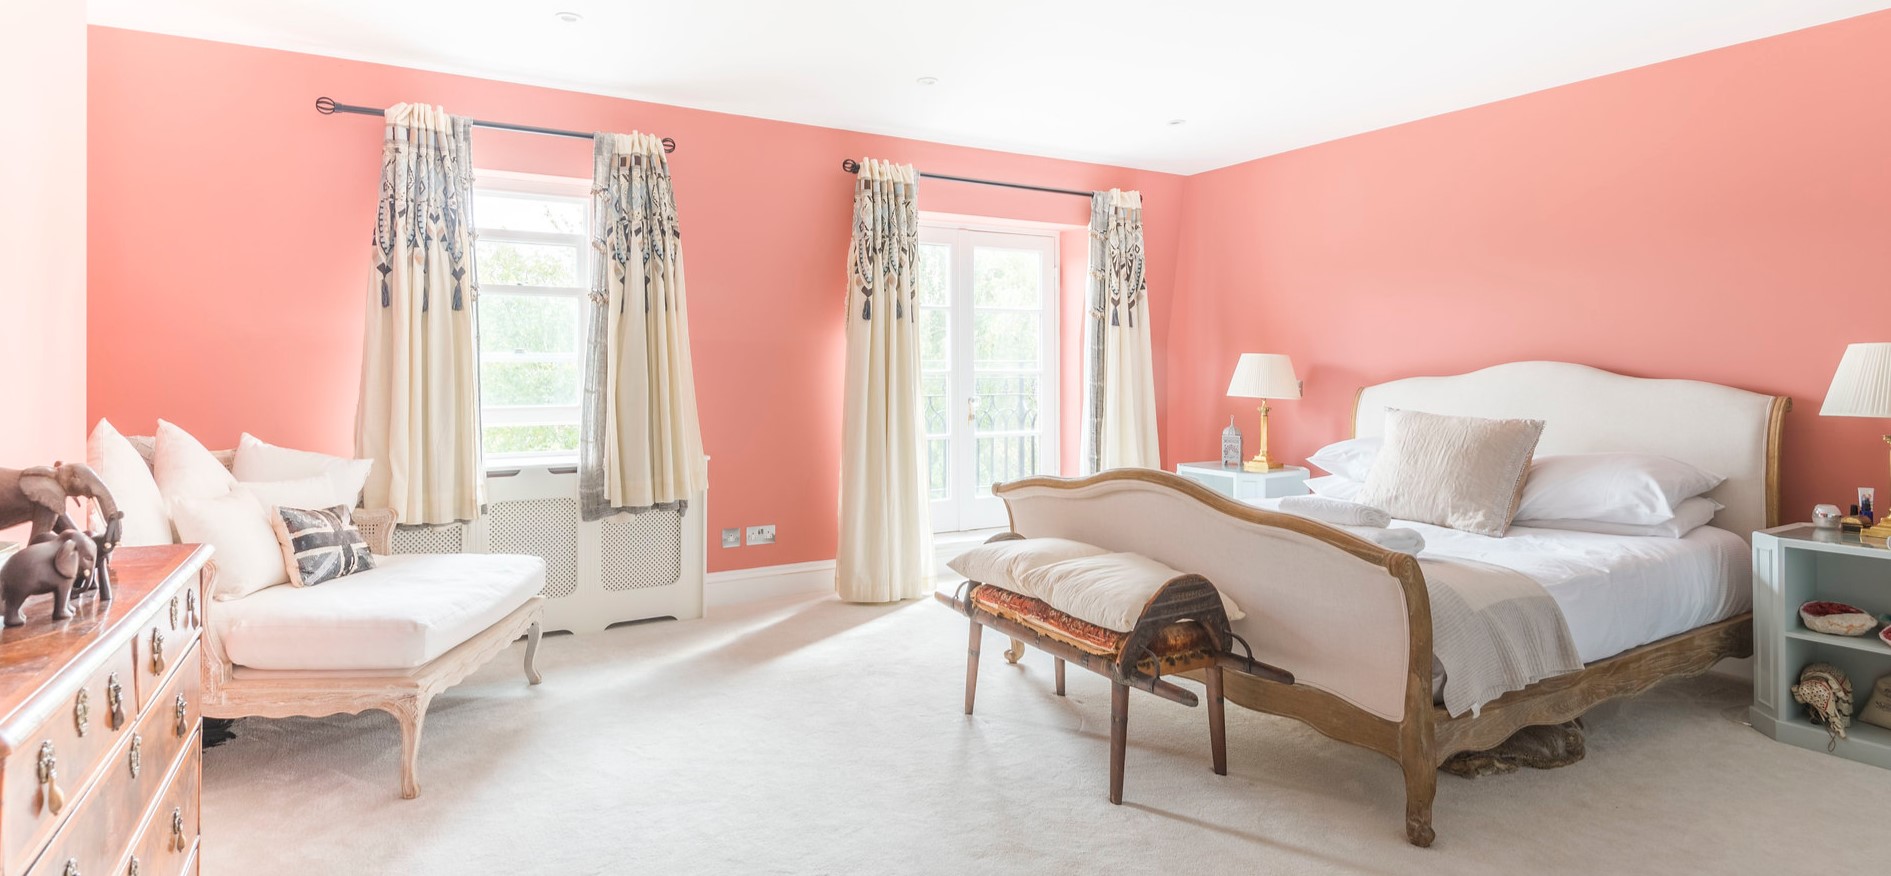 Оформление стен в спальне в нежно-розовом цвете